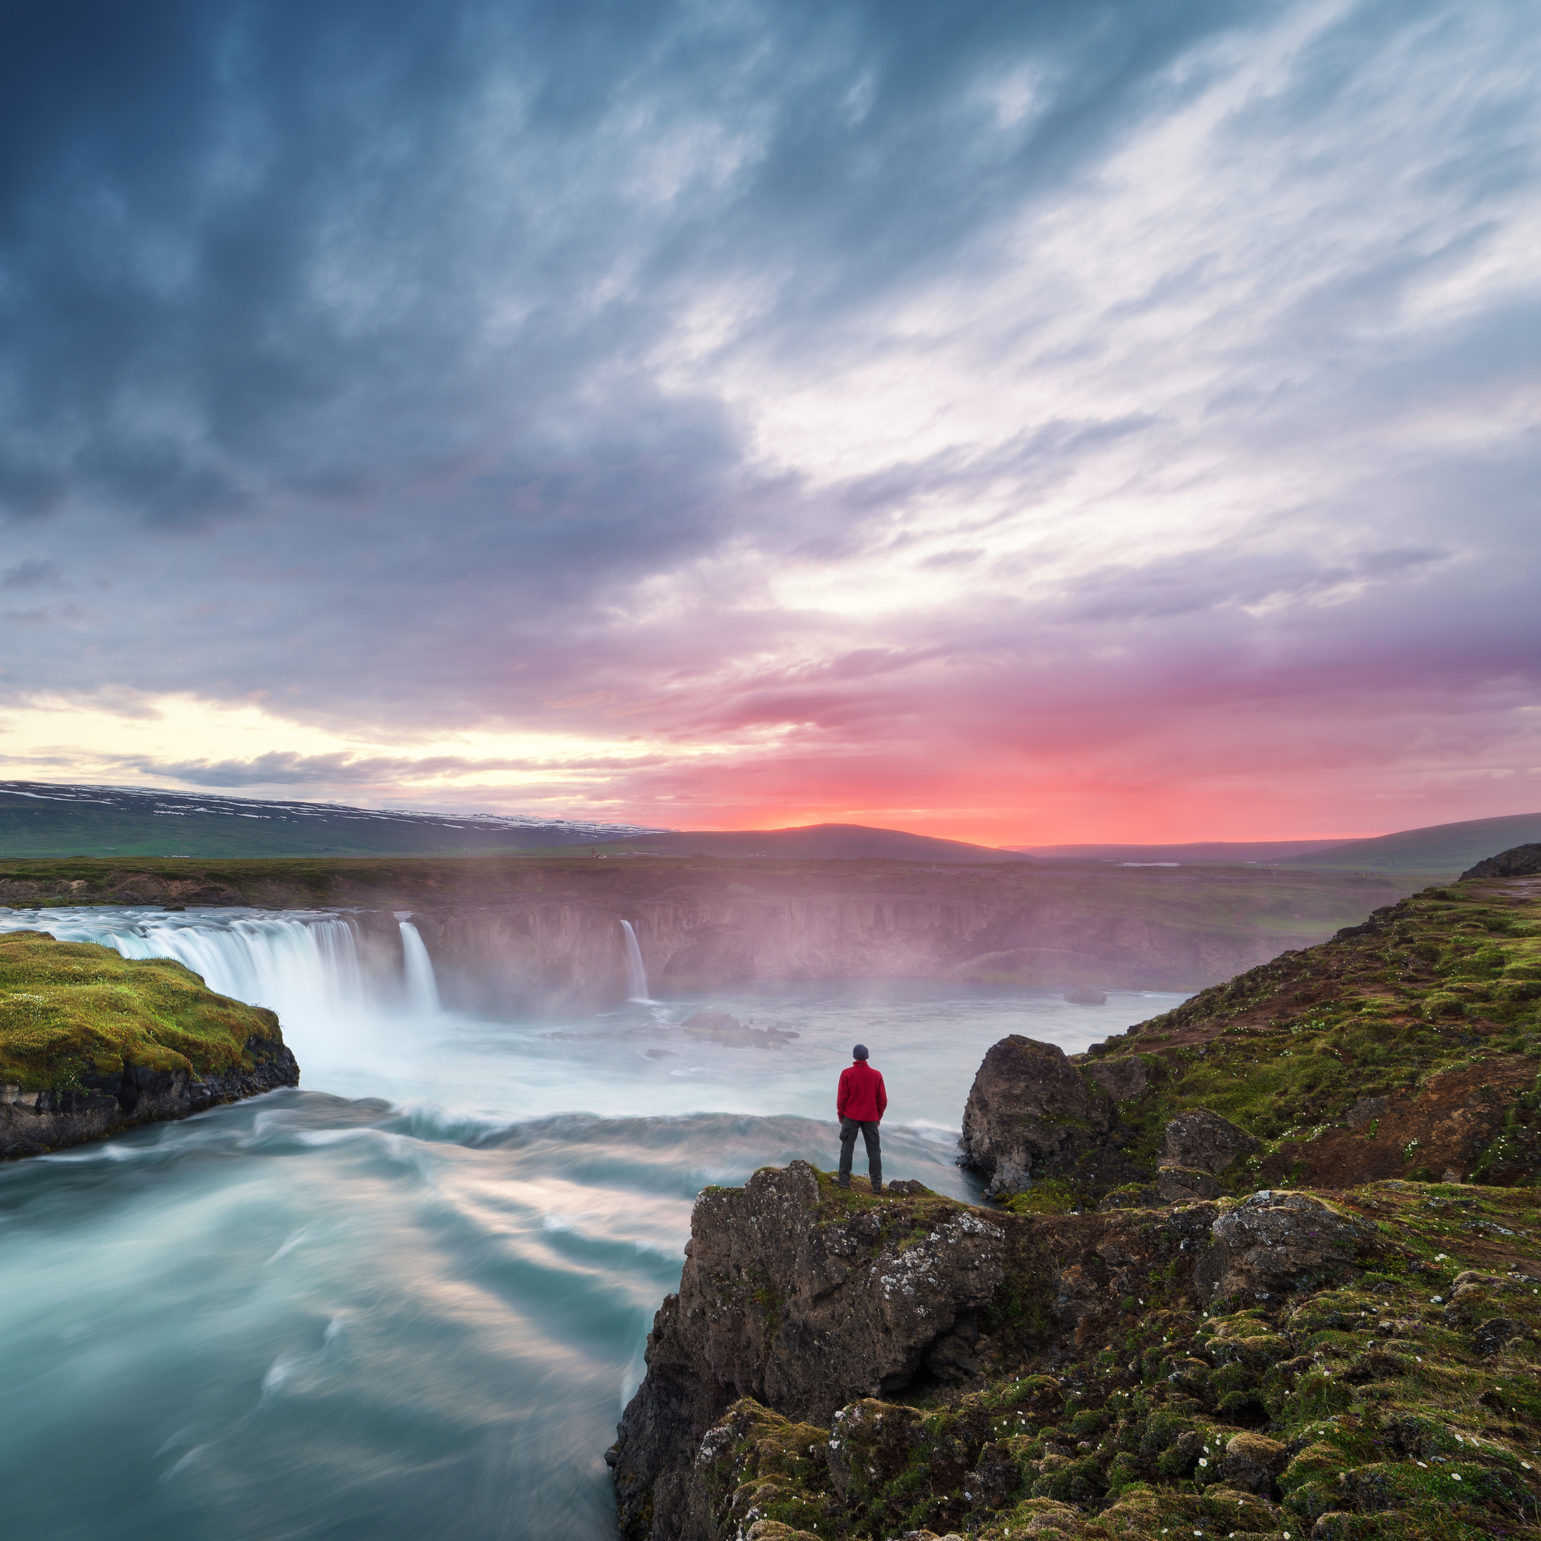 Summer flights to Reykjavik, Iceland from $407 round-trip